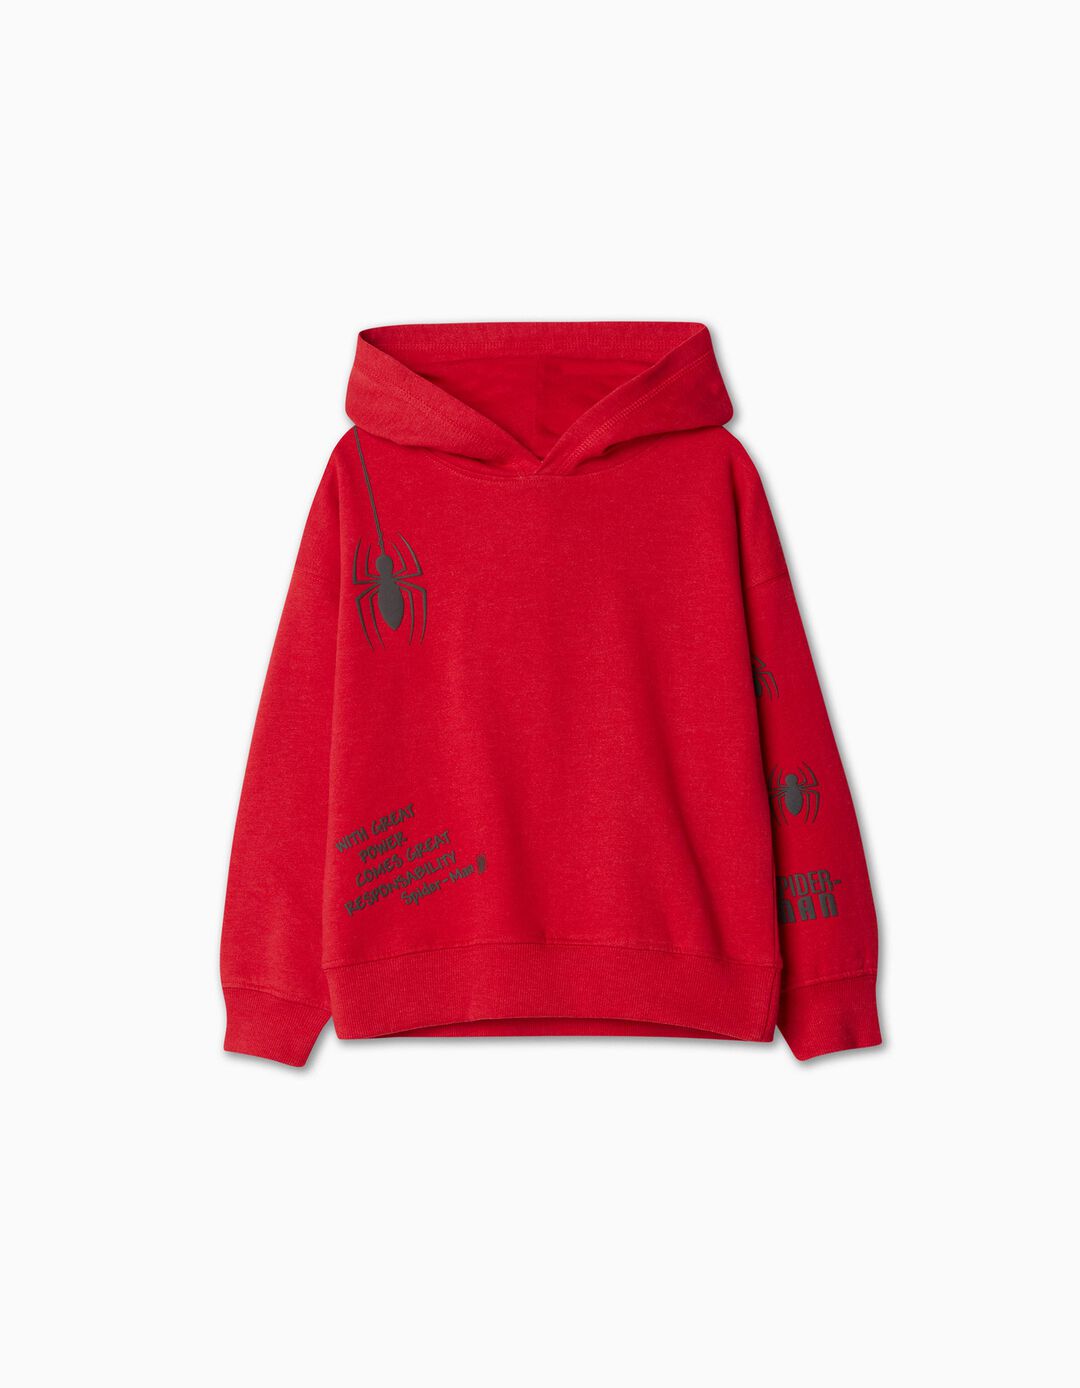 'Spider-Man' Hooded Sweatshirt, Boy, Red